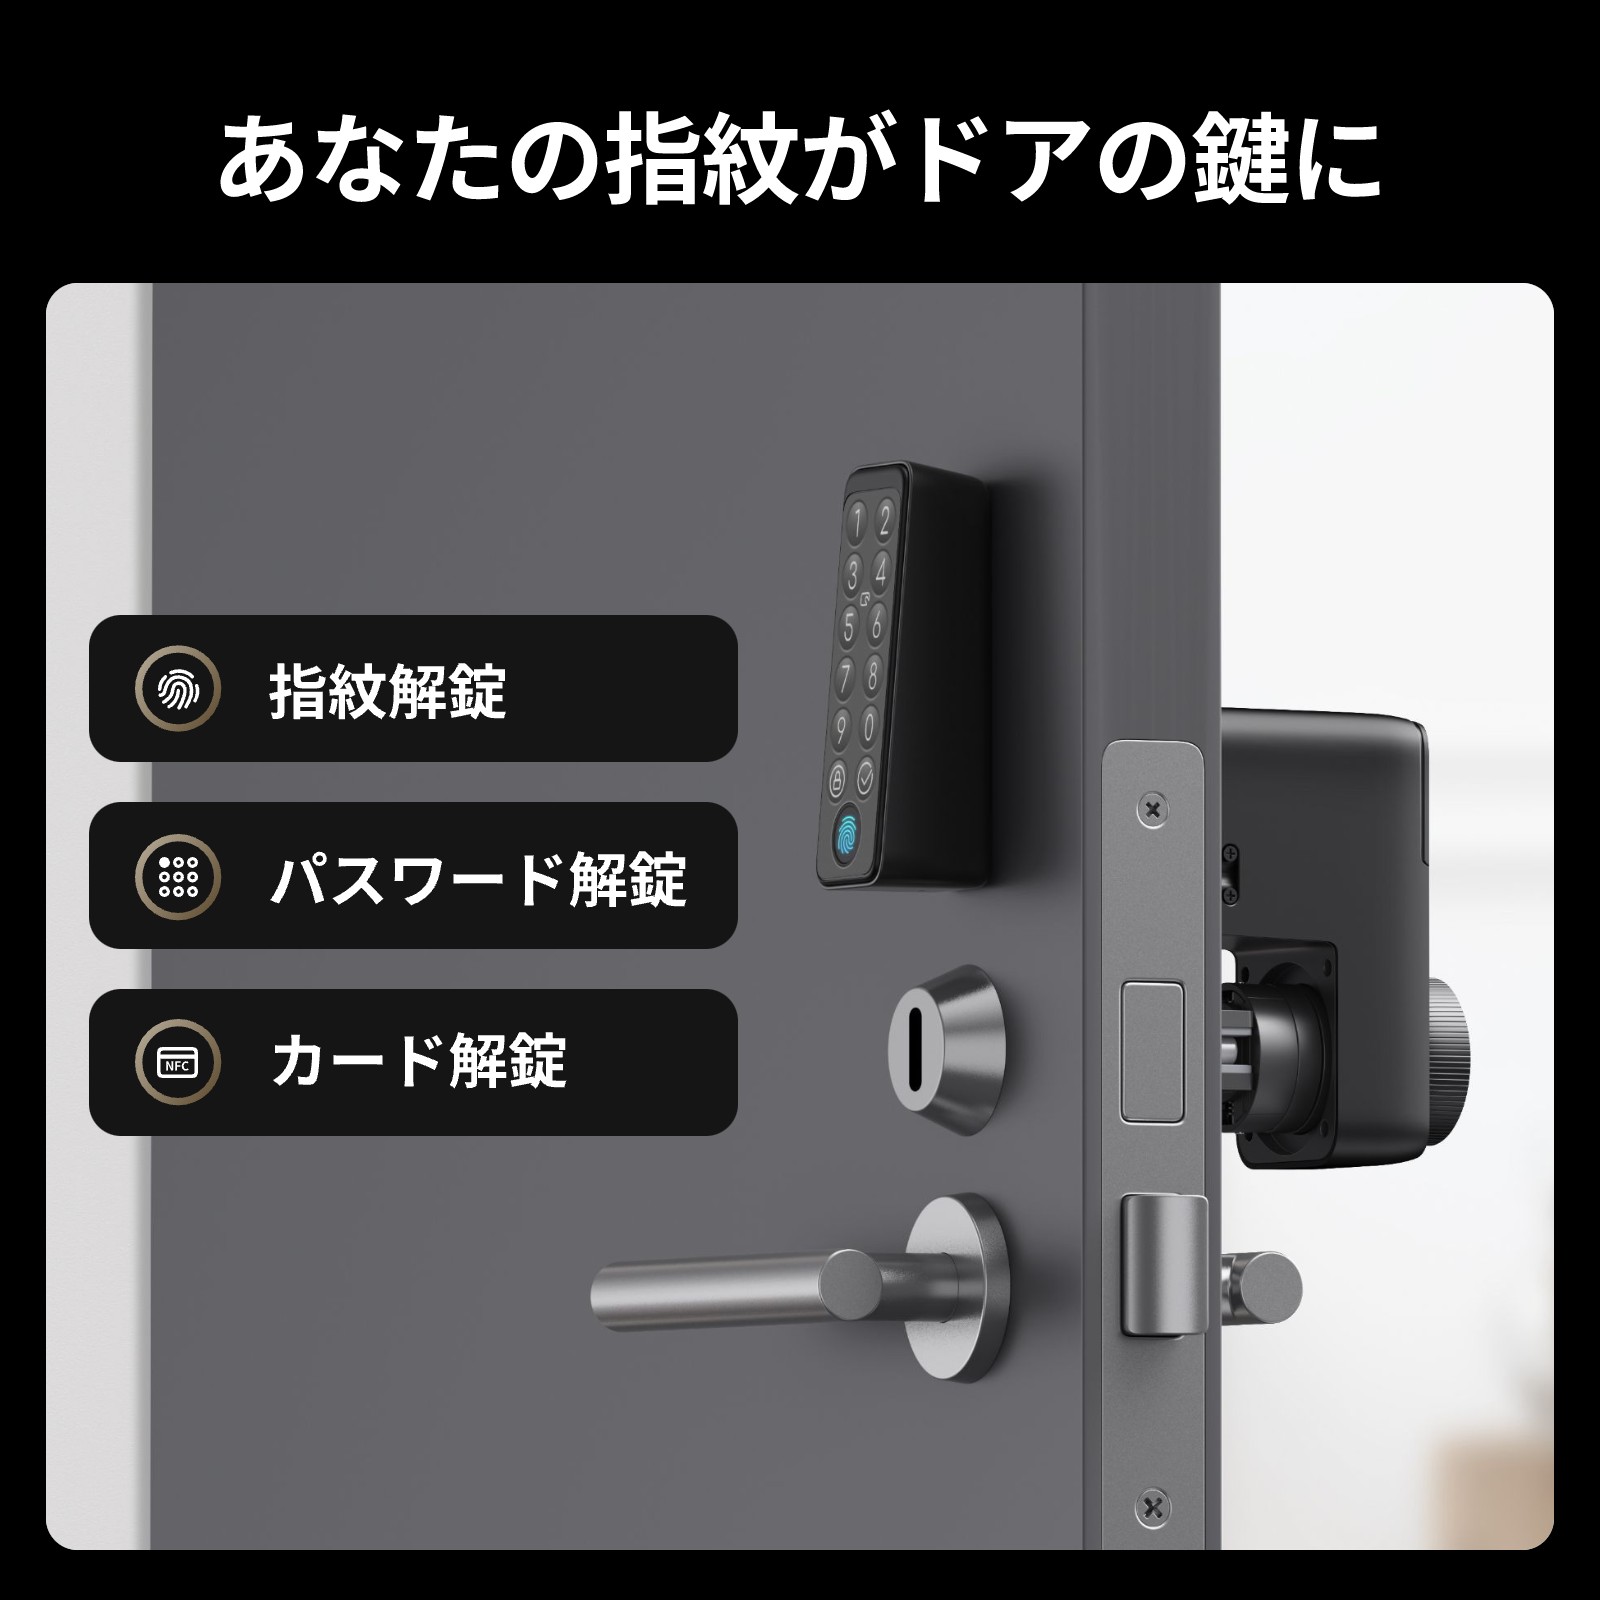 予約商品】SwitchBot ロック Pro スマートキー 鍵 長寿命バッテリー